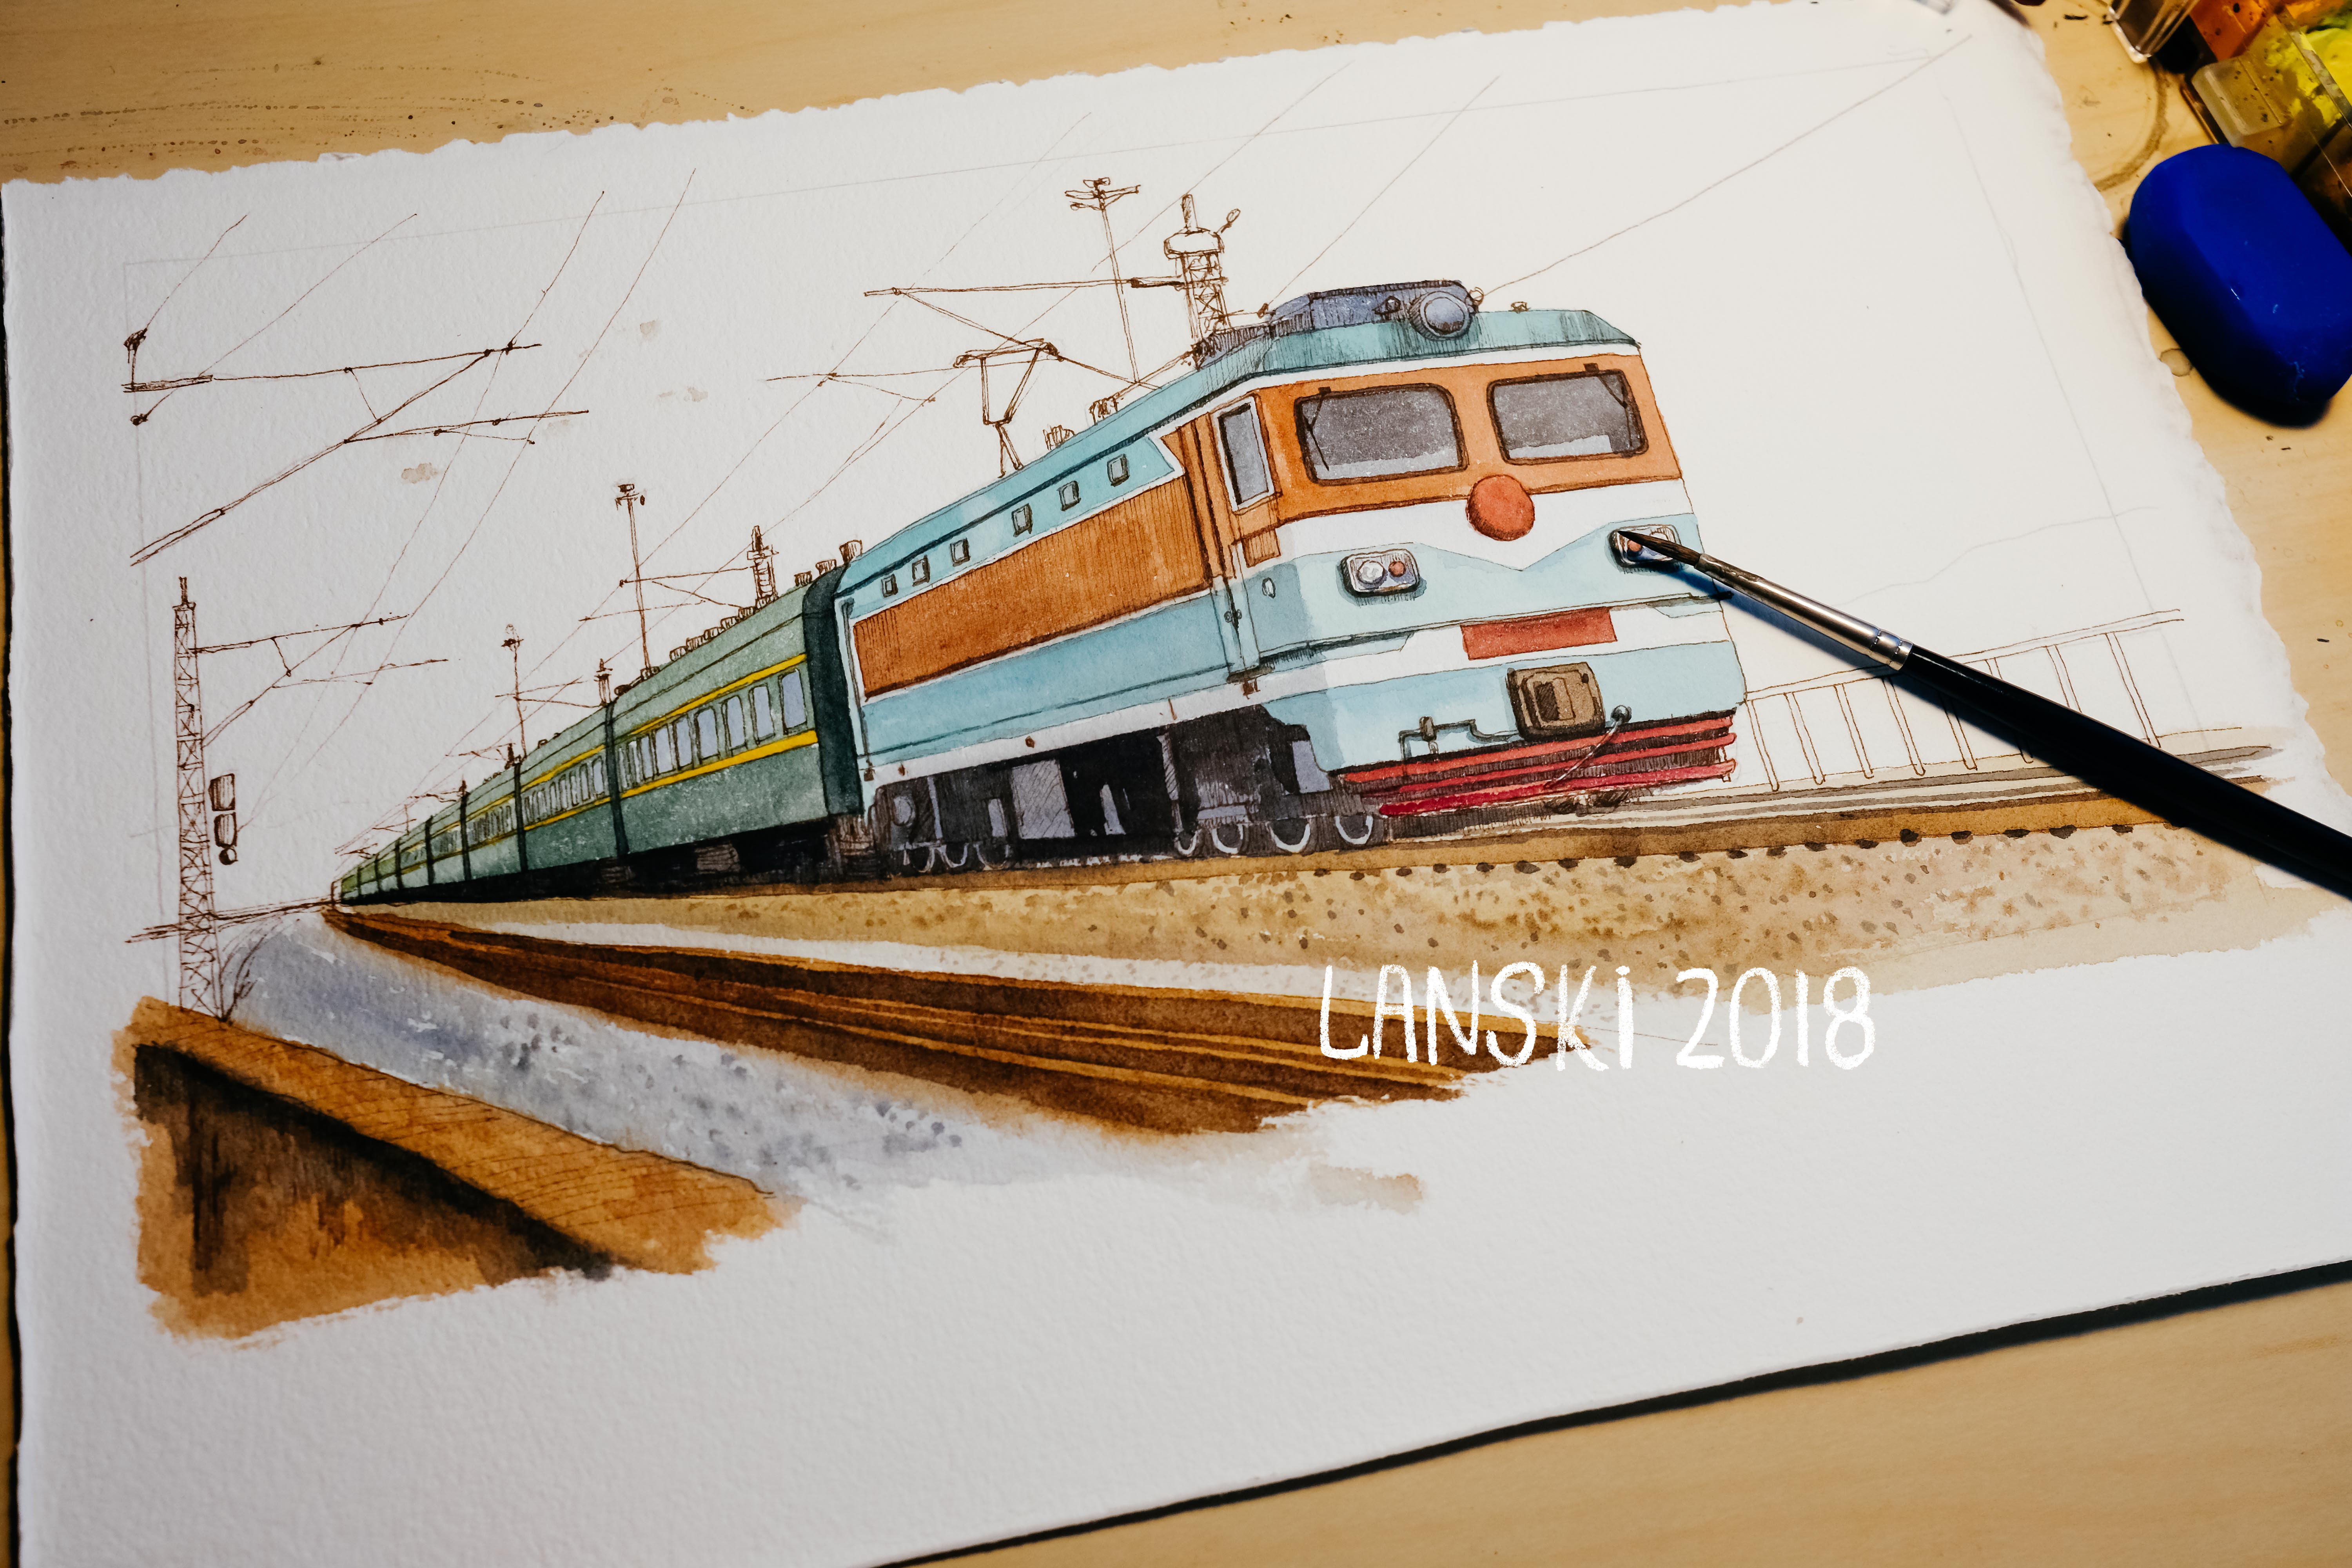 绿皮火车绘画 手绘图片